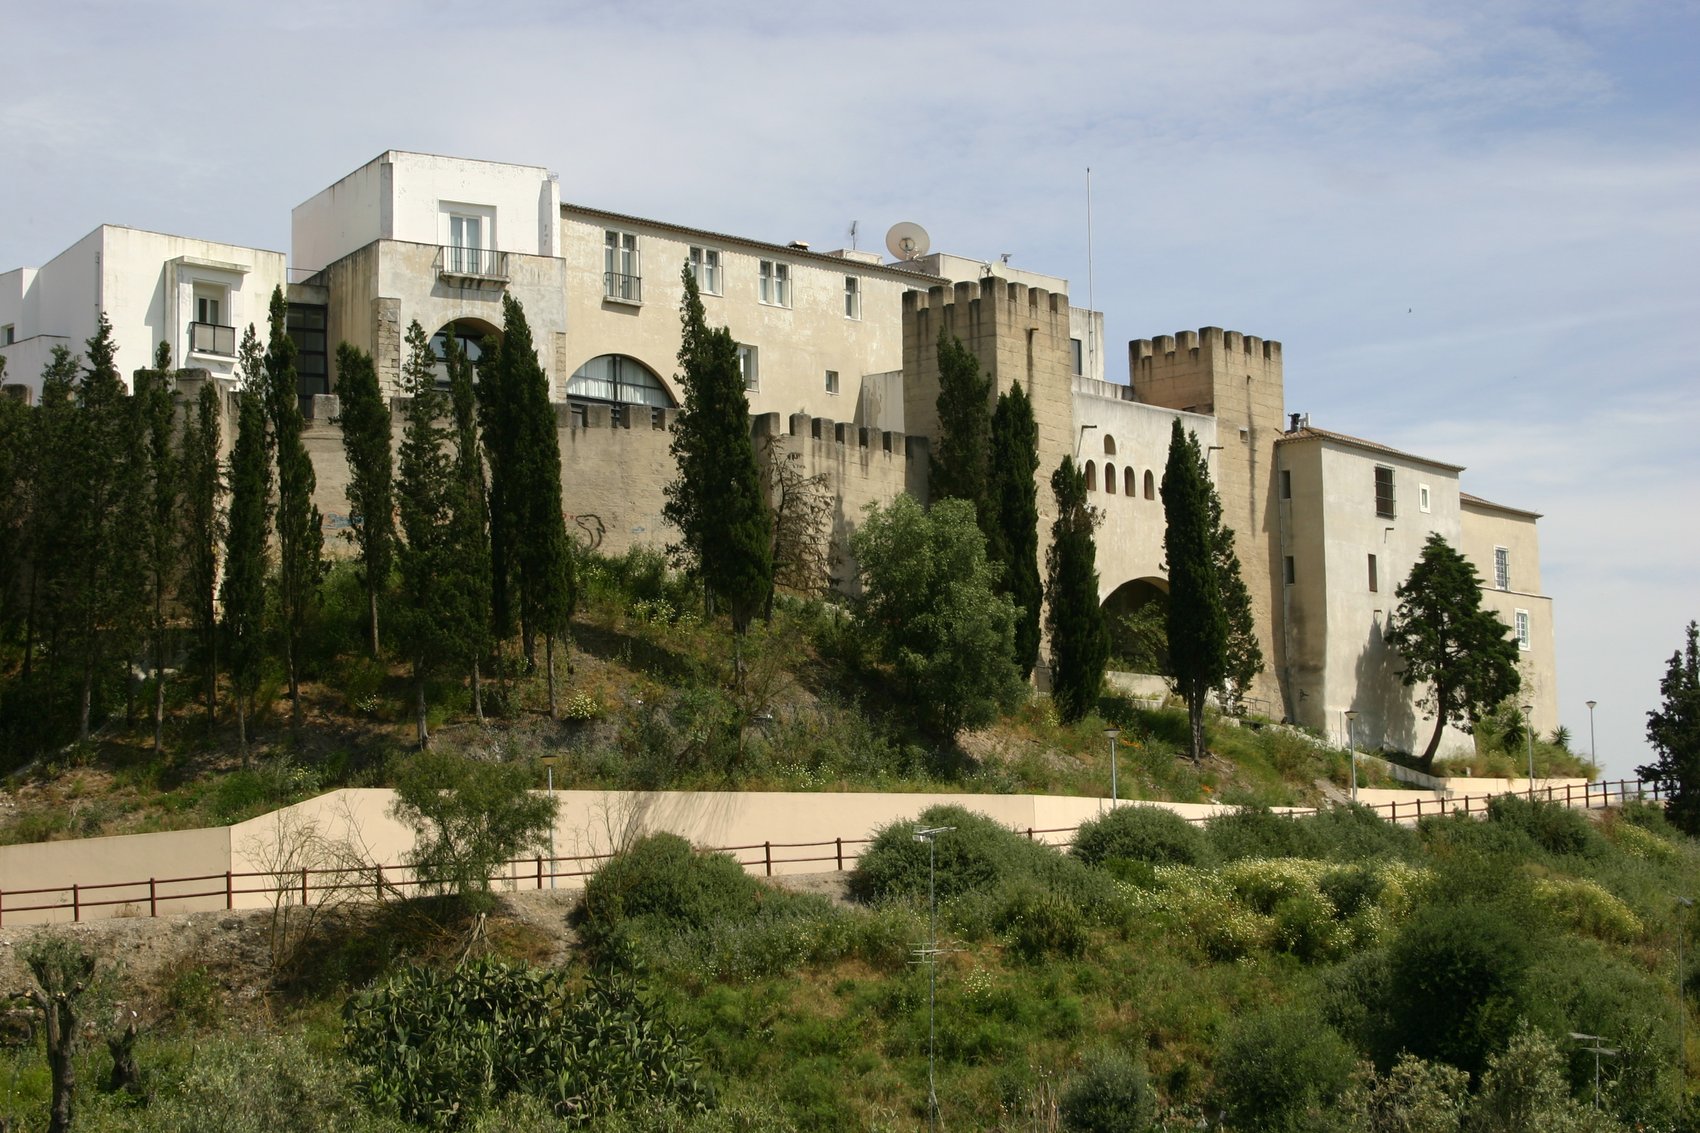 Castelo de Alcácer do Sal